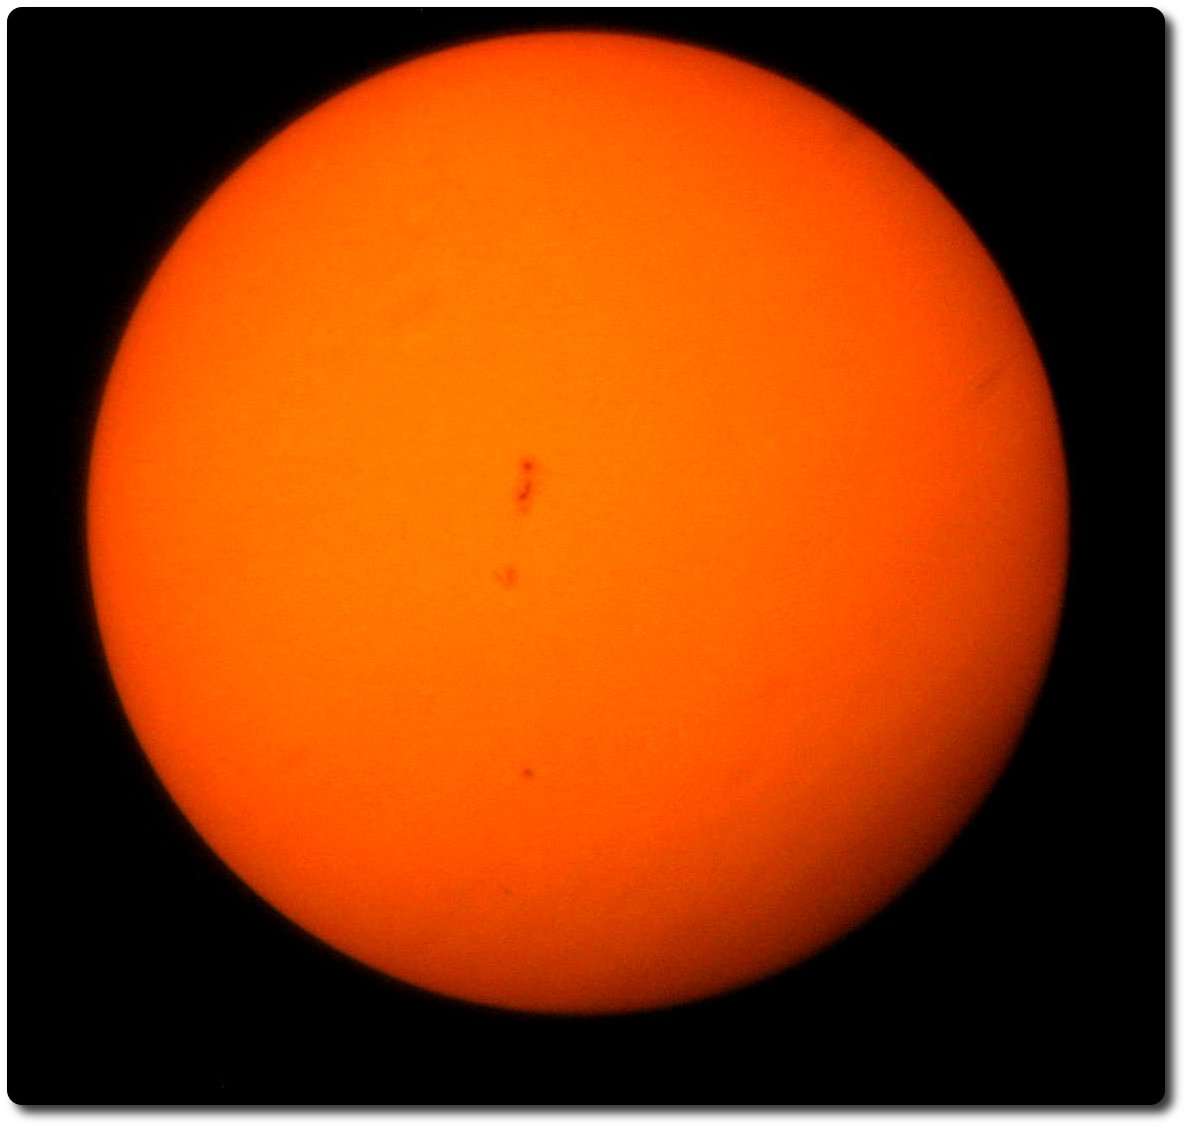 Sunspot 1302